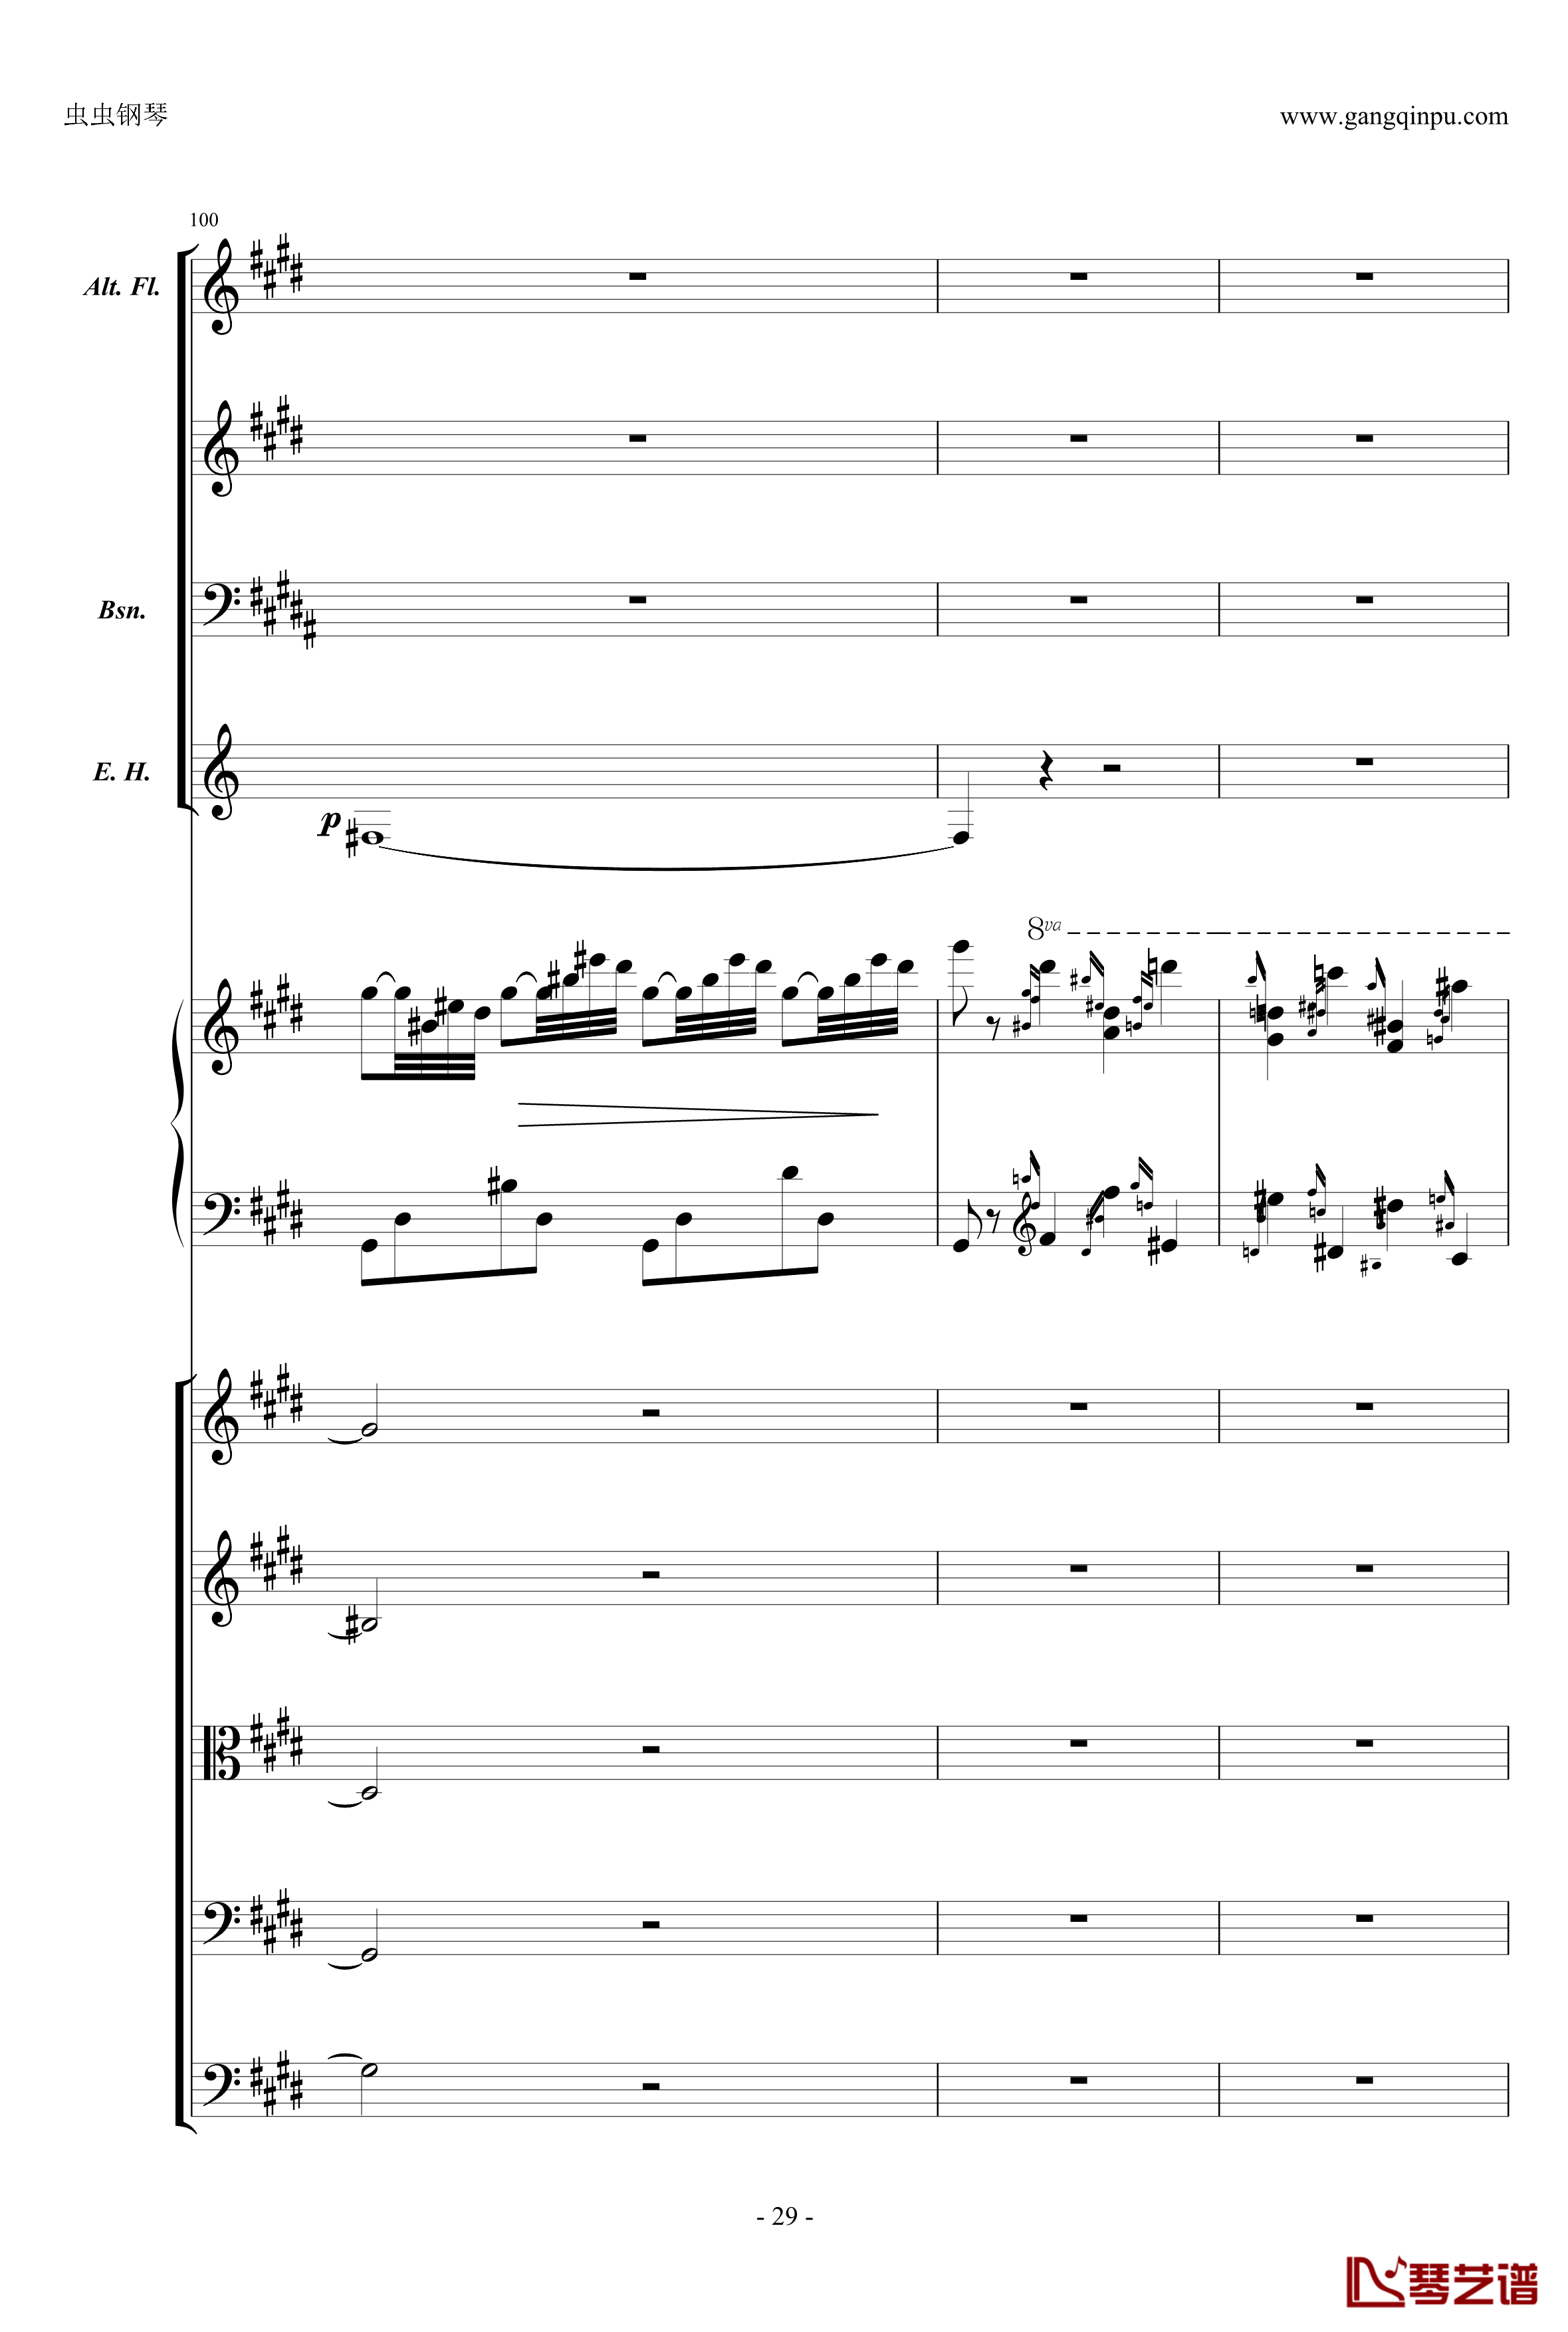 萧邦第一钢琴协奏曲第二乐章钢琴谱-肖邦-chopin29